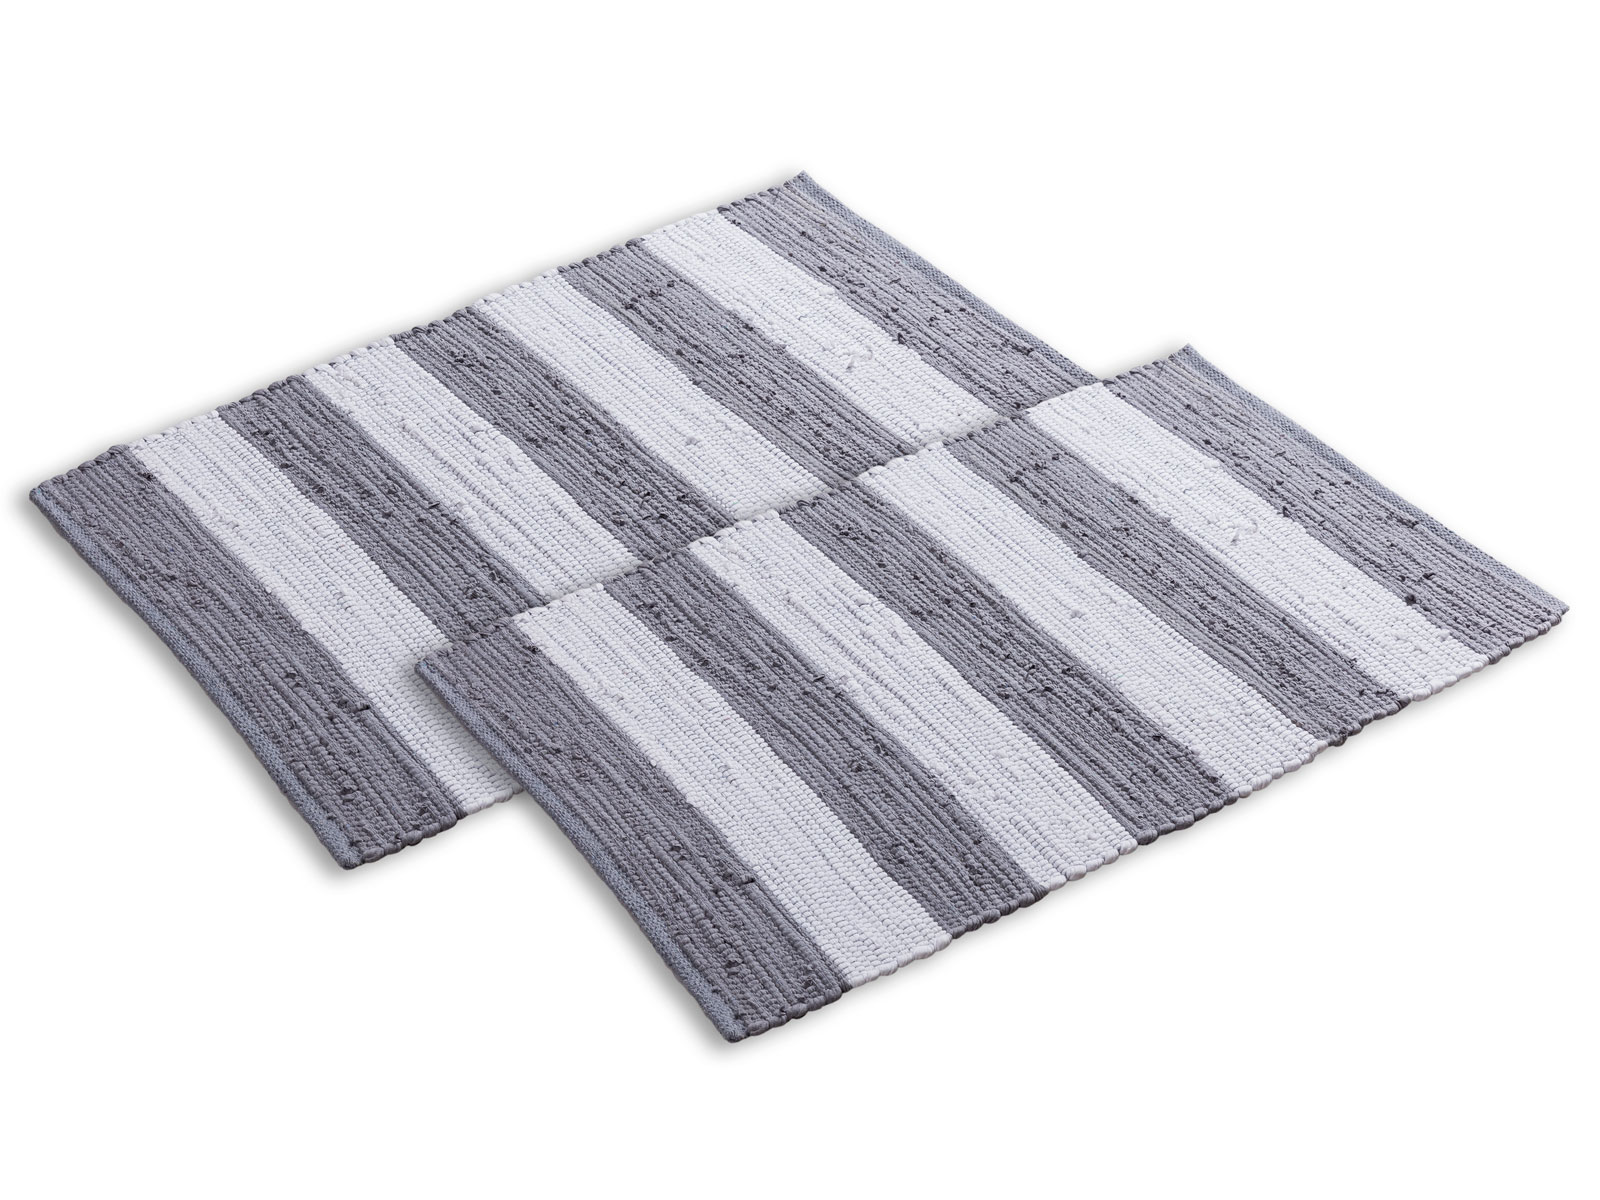 Duschvorleger rutschhemmend und weich Hochflor Badematte wendbar Relaxdays Badteppich Baumwolle 80 x 50 cm grau